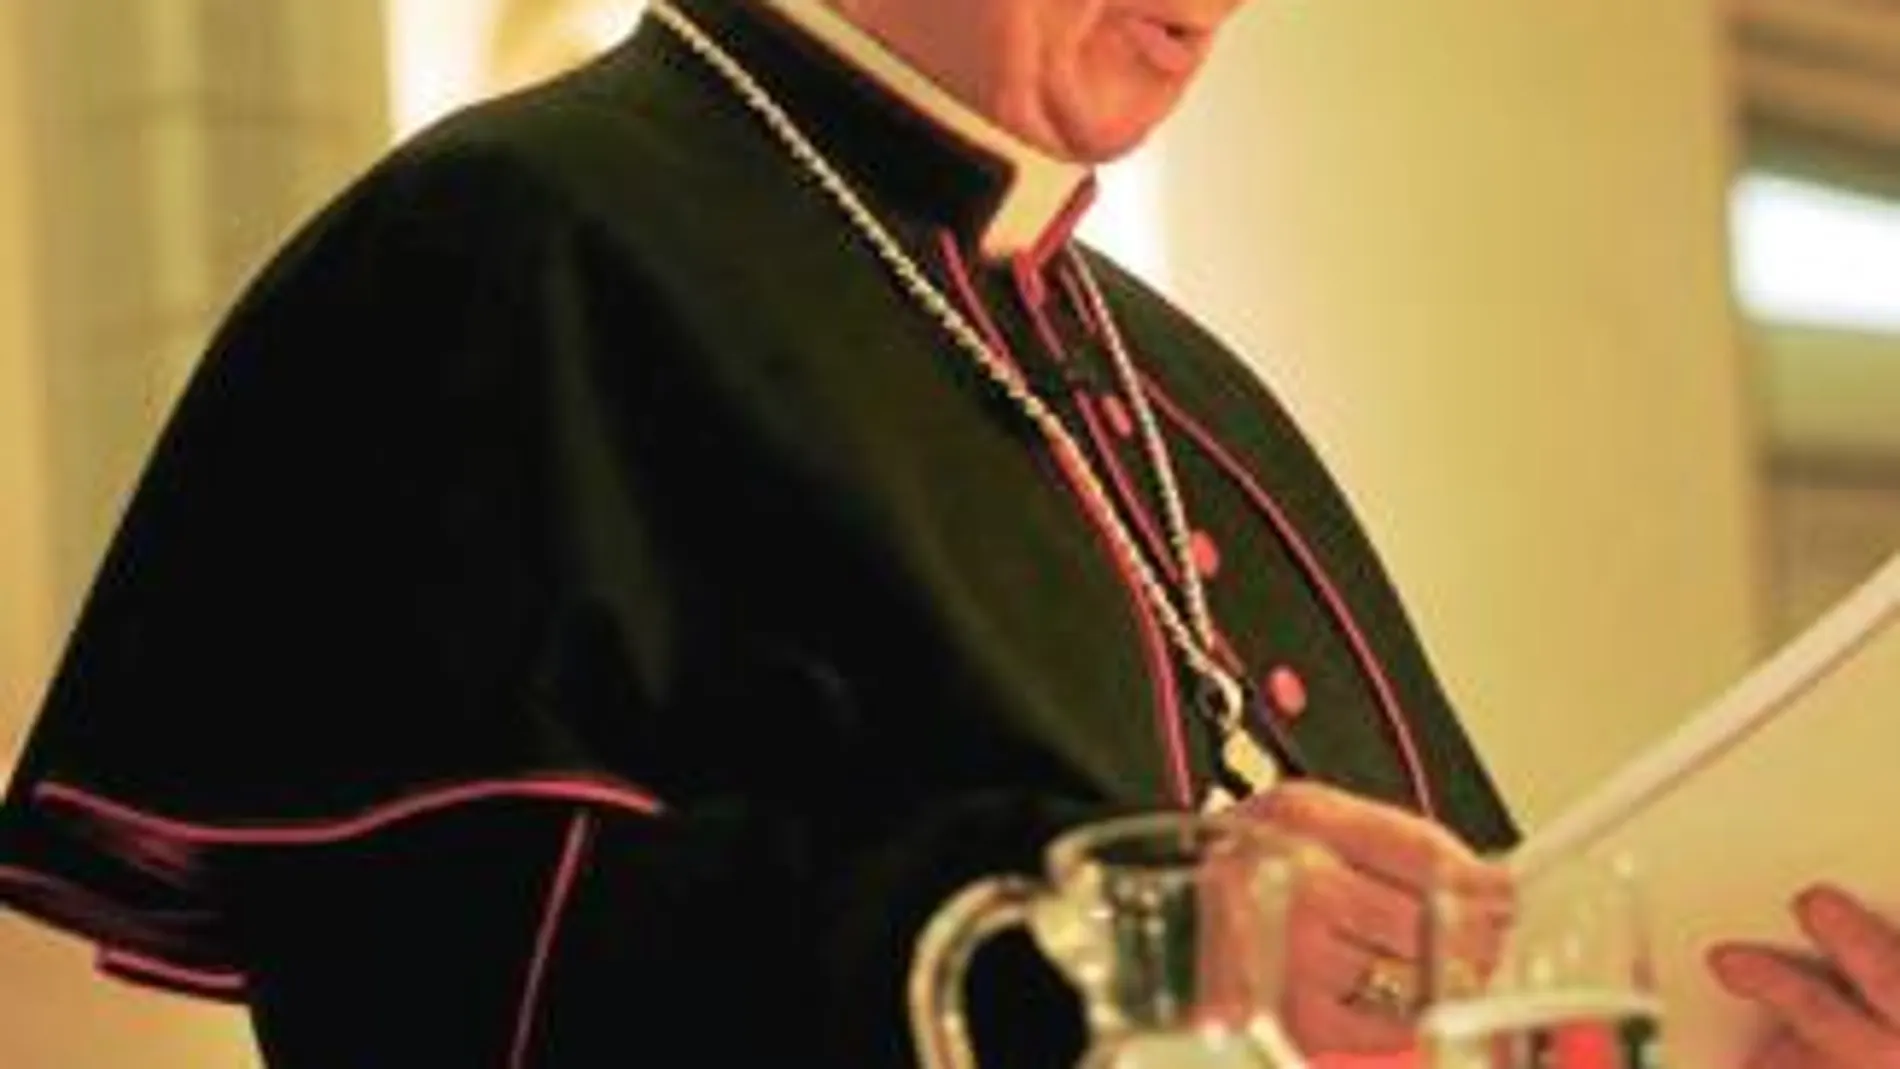 El cardenal Antonio Cañizares